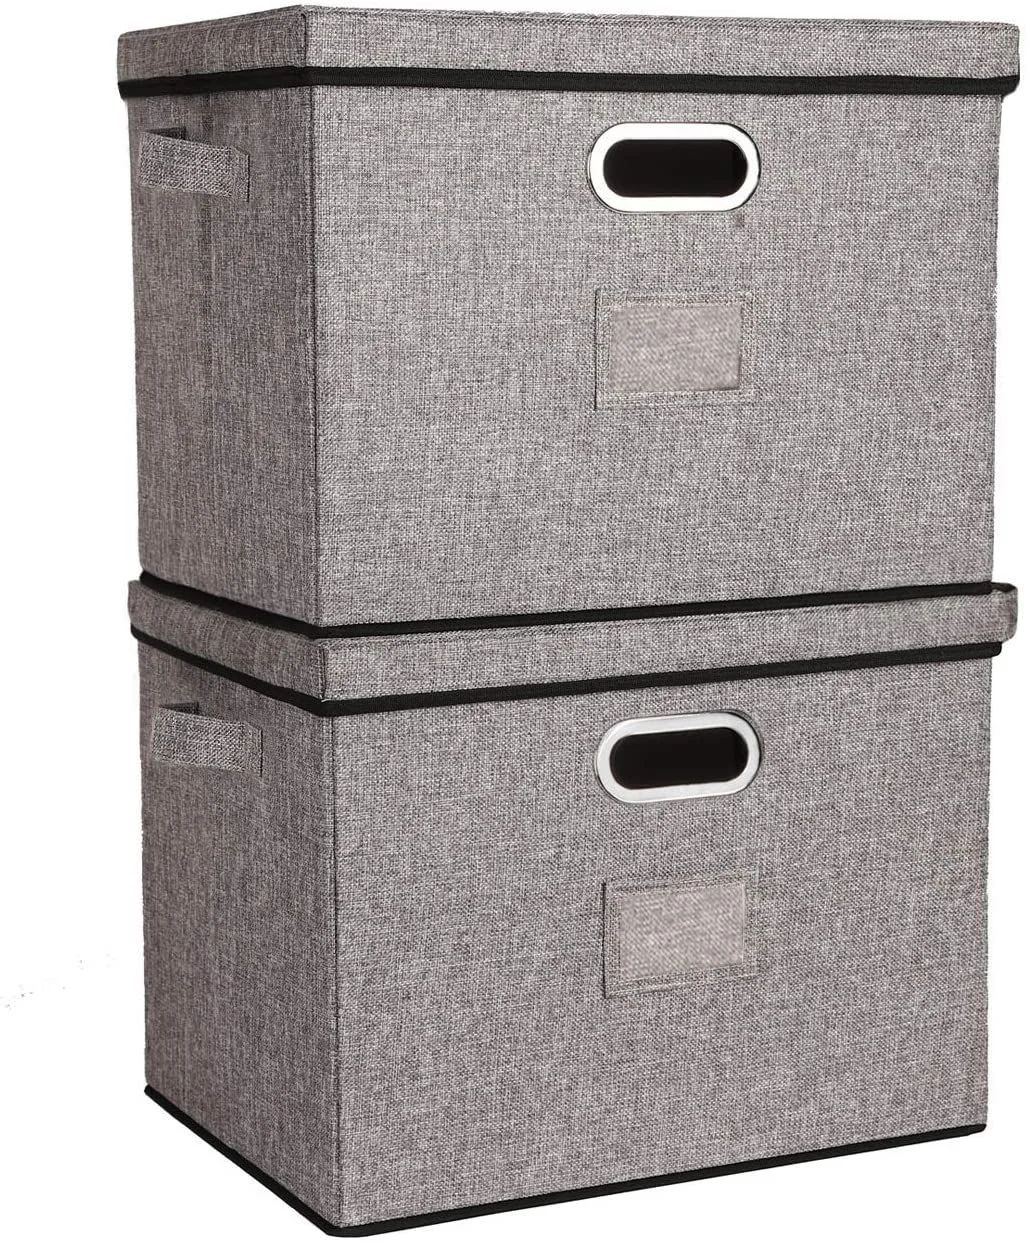 Lukeline ナチュラルな色合い 収納ボックス ふた付き 大容量46L 2個セット 収納 ケース 収納箱 折りたたみ式